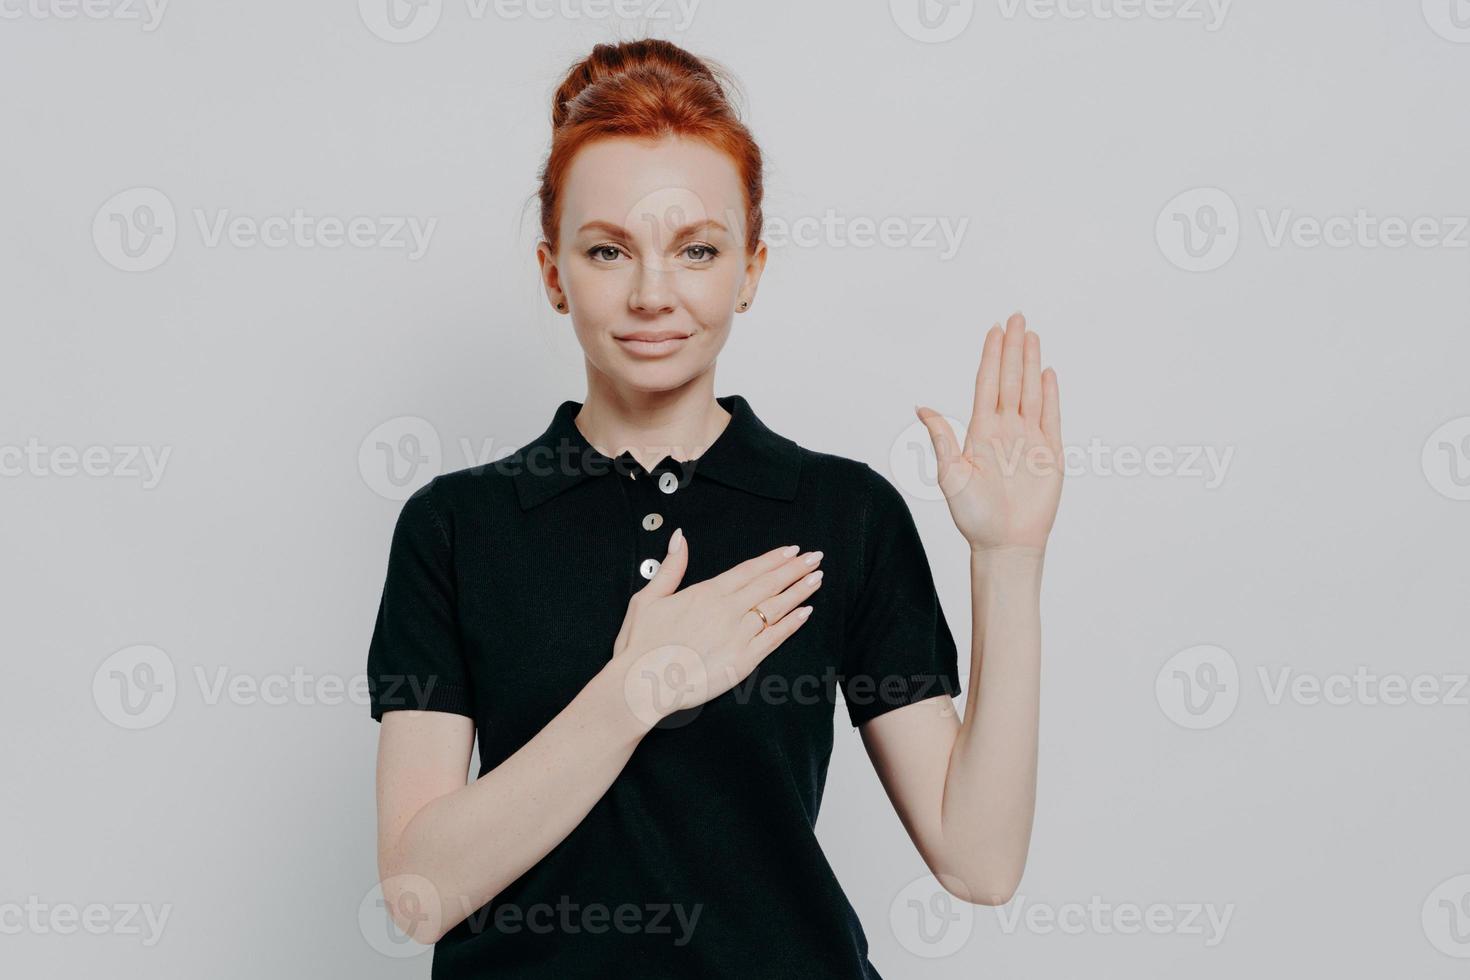 prise de vue en studio d'une femme aux cheveux rouges sérieuse faisant des promesses, jurant avec la main sur la poitrine en studio photo